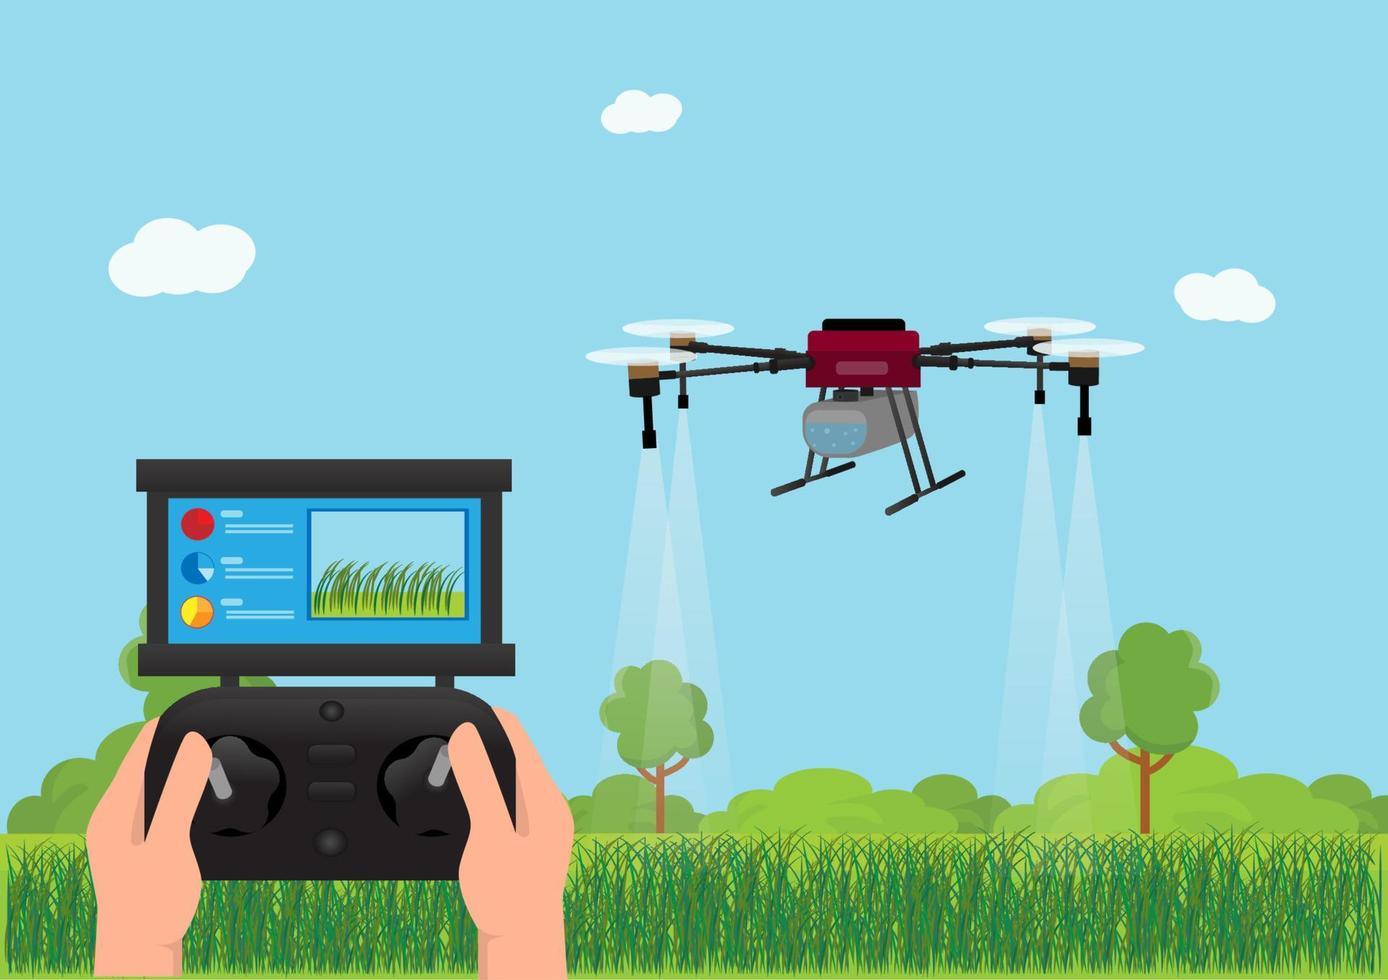 gli agricoltori controllano l'uso dei droni per spruzzare fertilizzanti sulle risaie. illustrazione vettoriale del concetto di innovazione tecnologica agricola